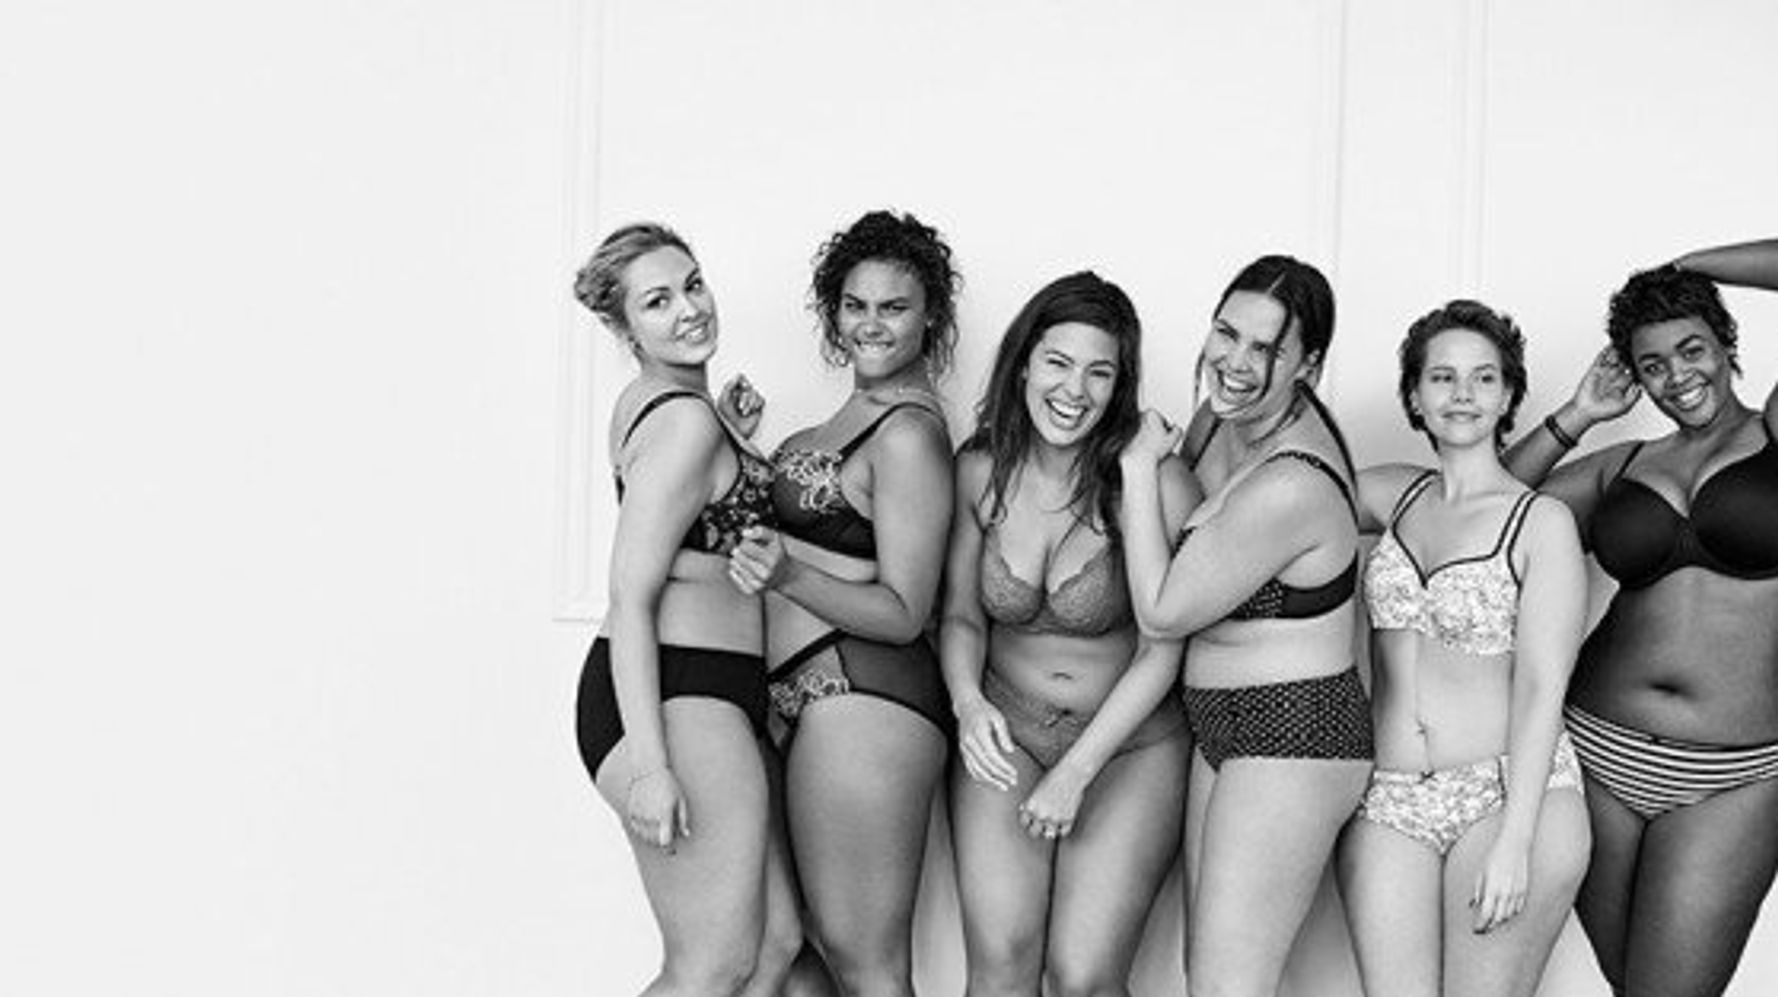 痩せすぎモデル ではない女性たちが セクシーの意味を教えてくれる 画像 ハフポスト Life